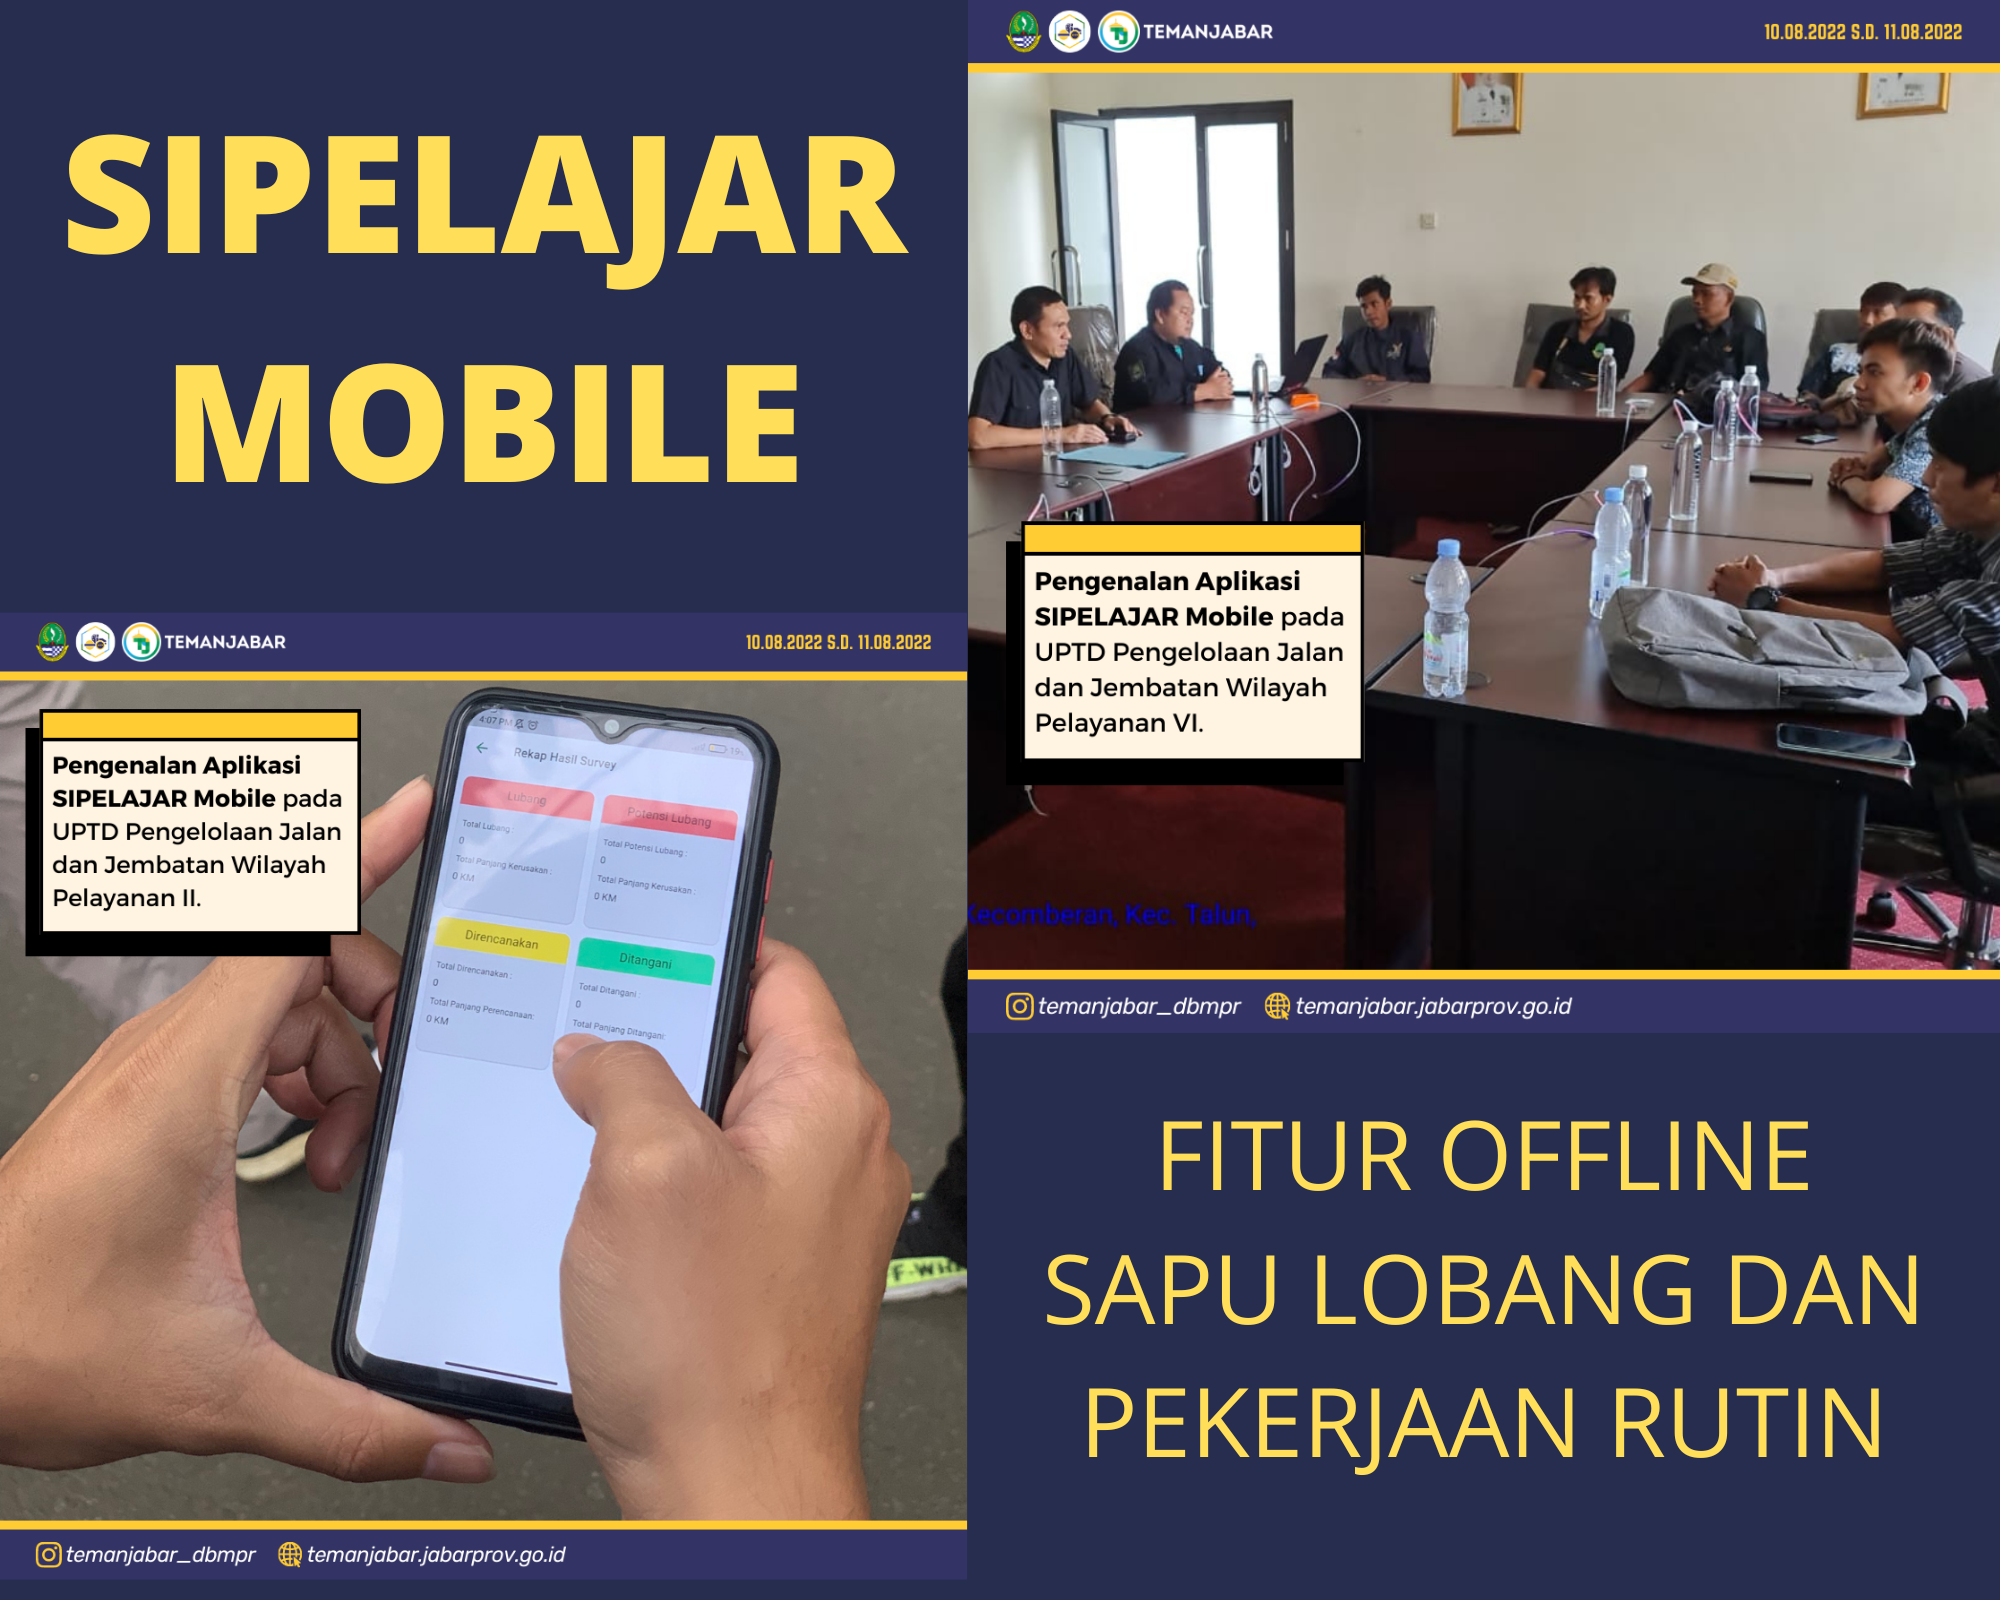 Pengenalan Aplikasi Sipelajar Mobile di UPTD Wil. Pel. II dan VI